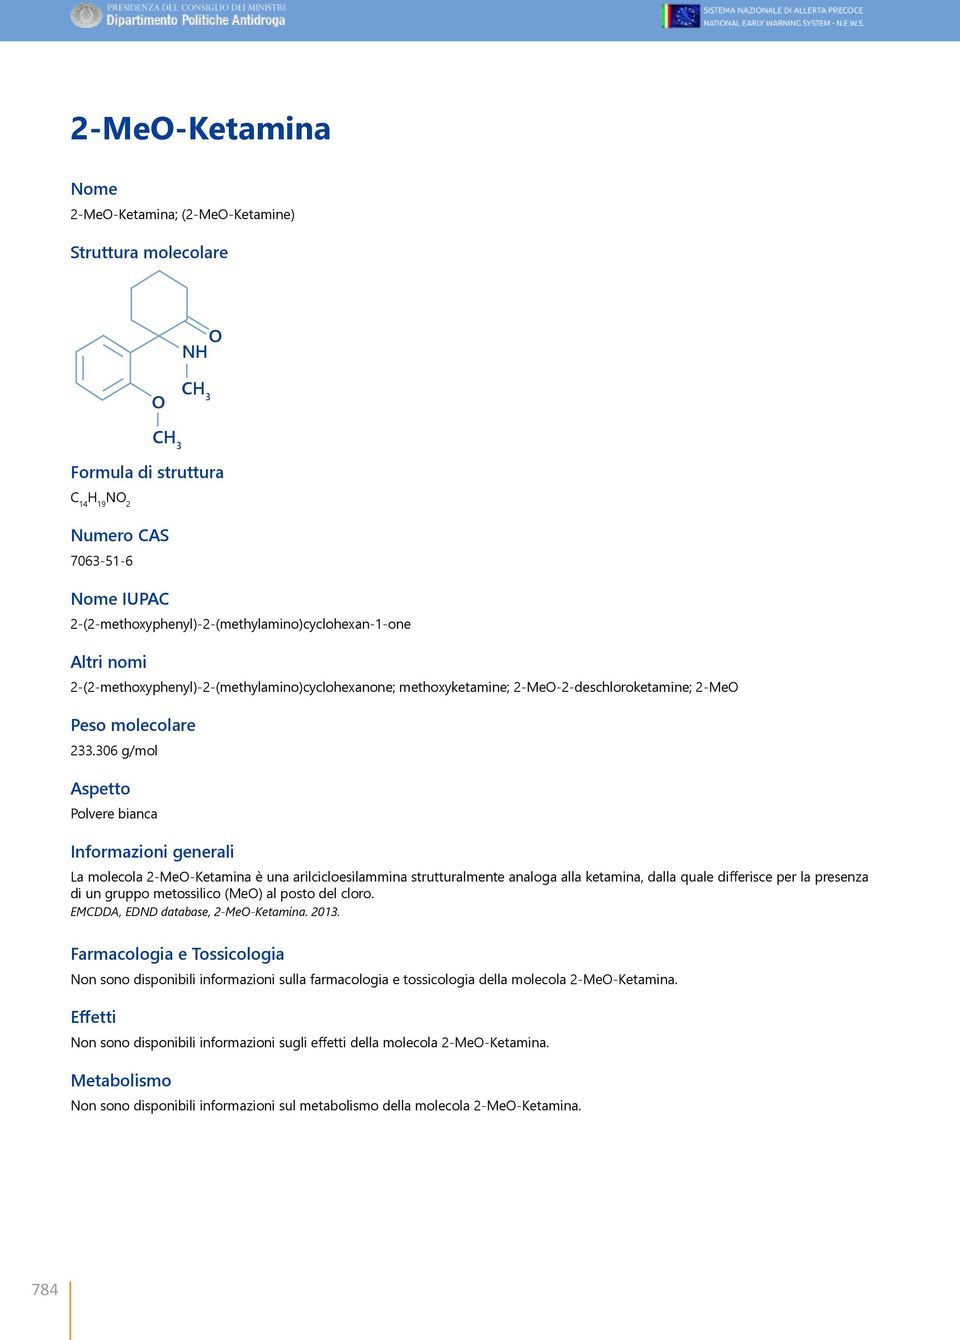 306 g/mol Aspetto Polvere bianca CH 3 Informazioni generali La molecola 2-MeO-Ketamina è una arilcicloesilammina strutturalmente analoga alla ketamina, dalla quale differisce per la presenza di un